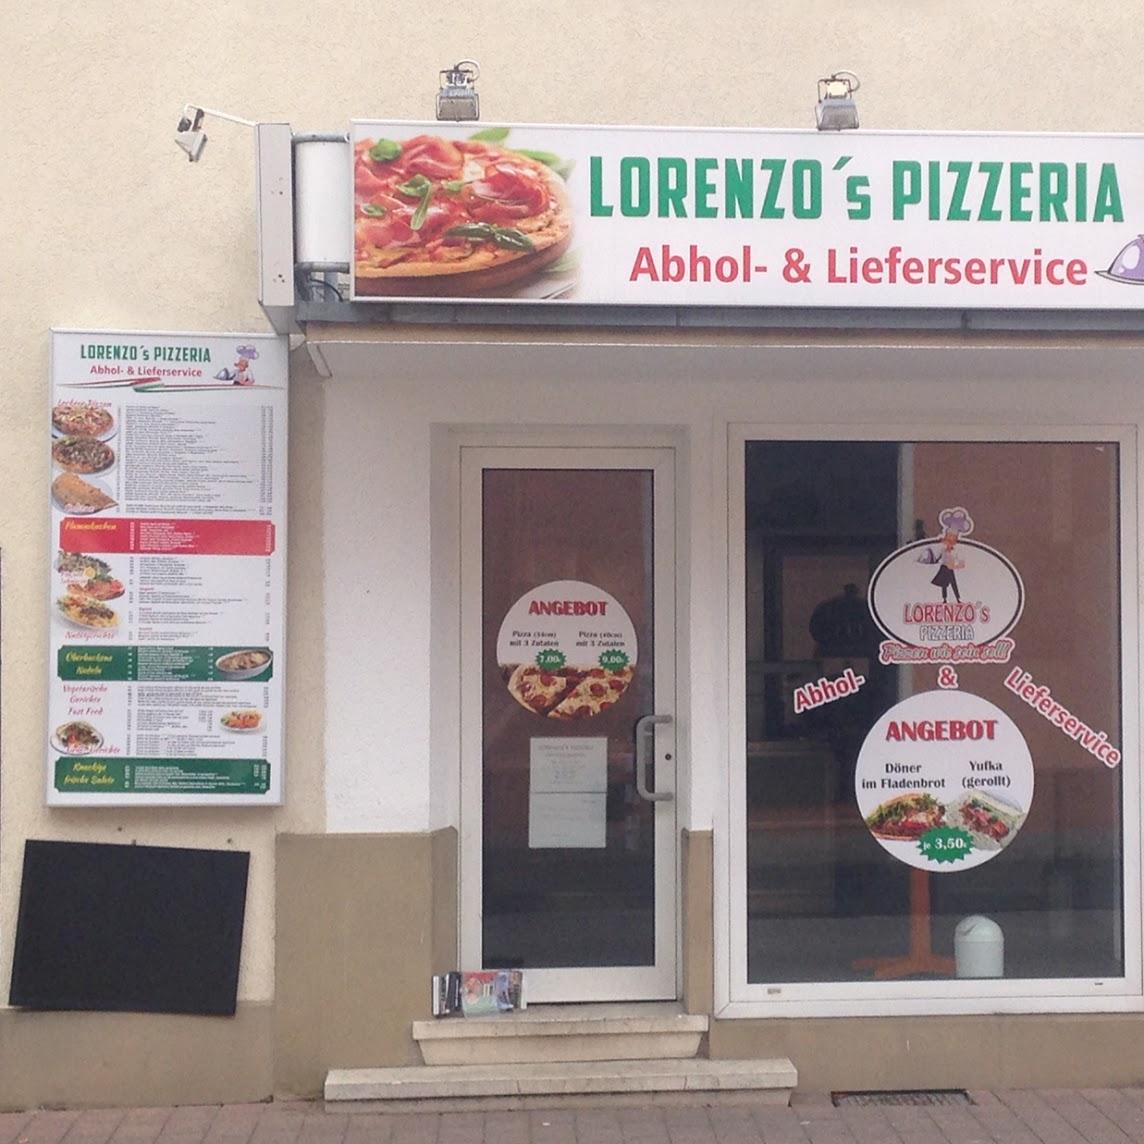 Restaurant "Lorenzo